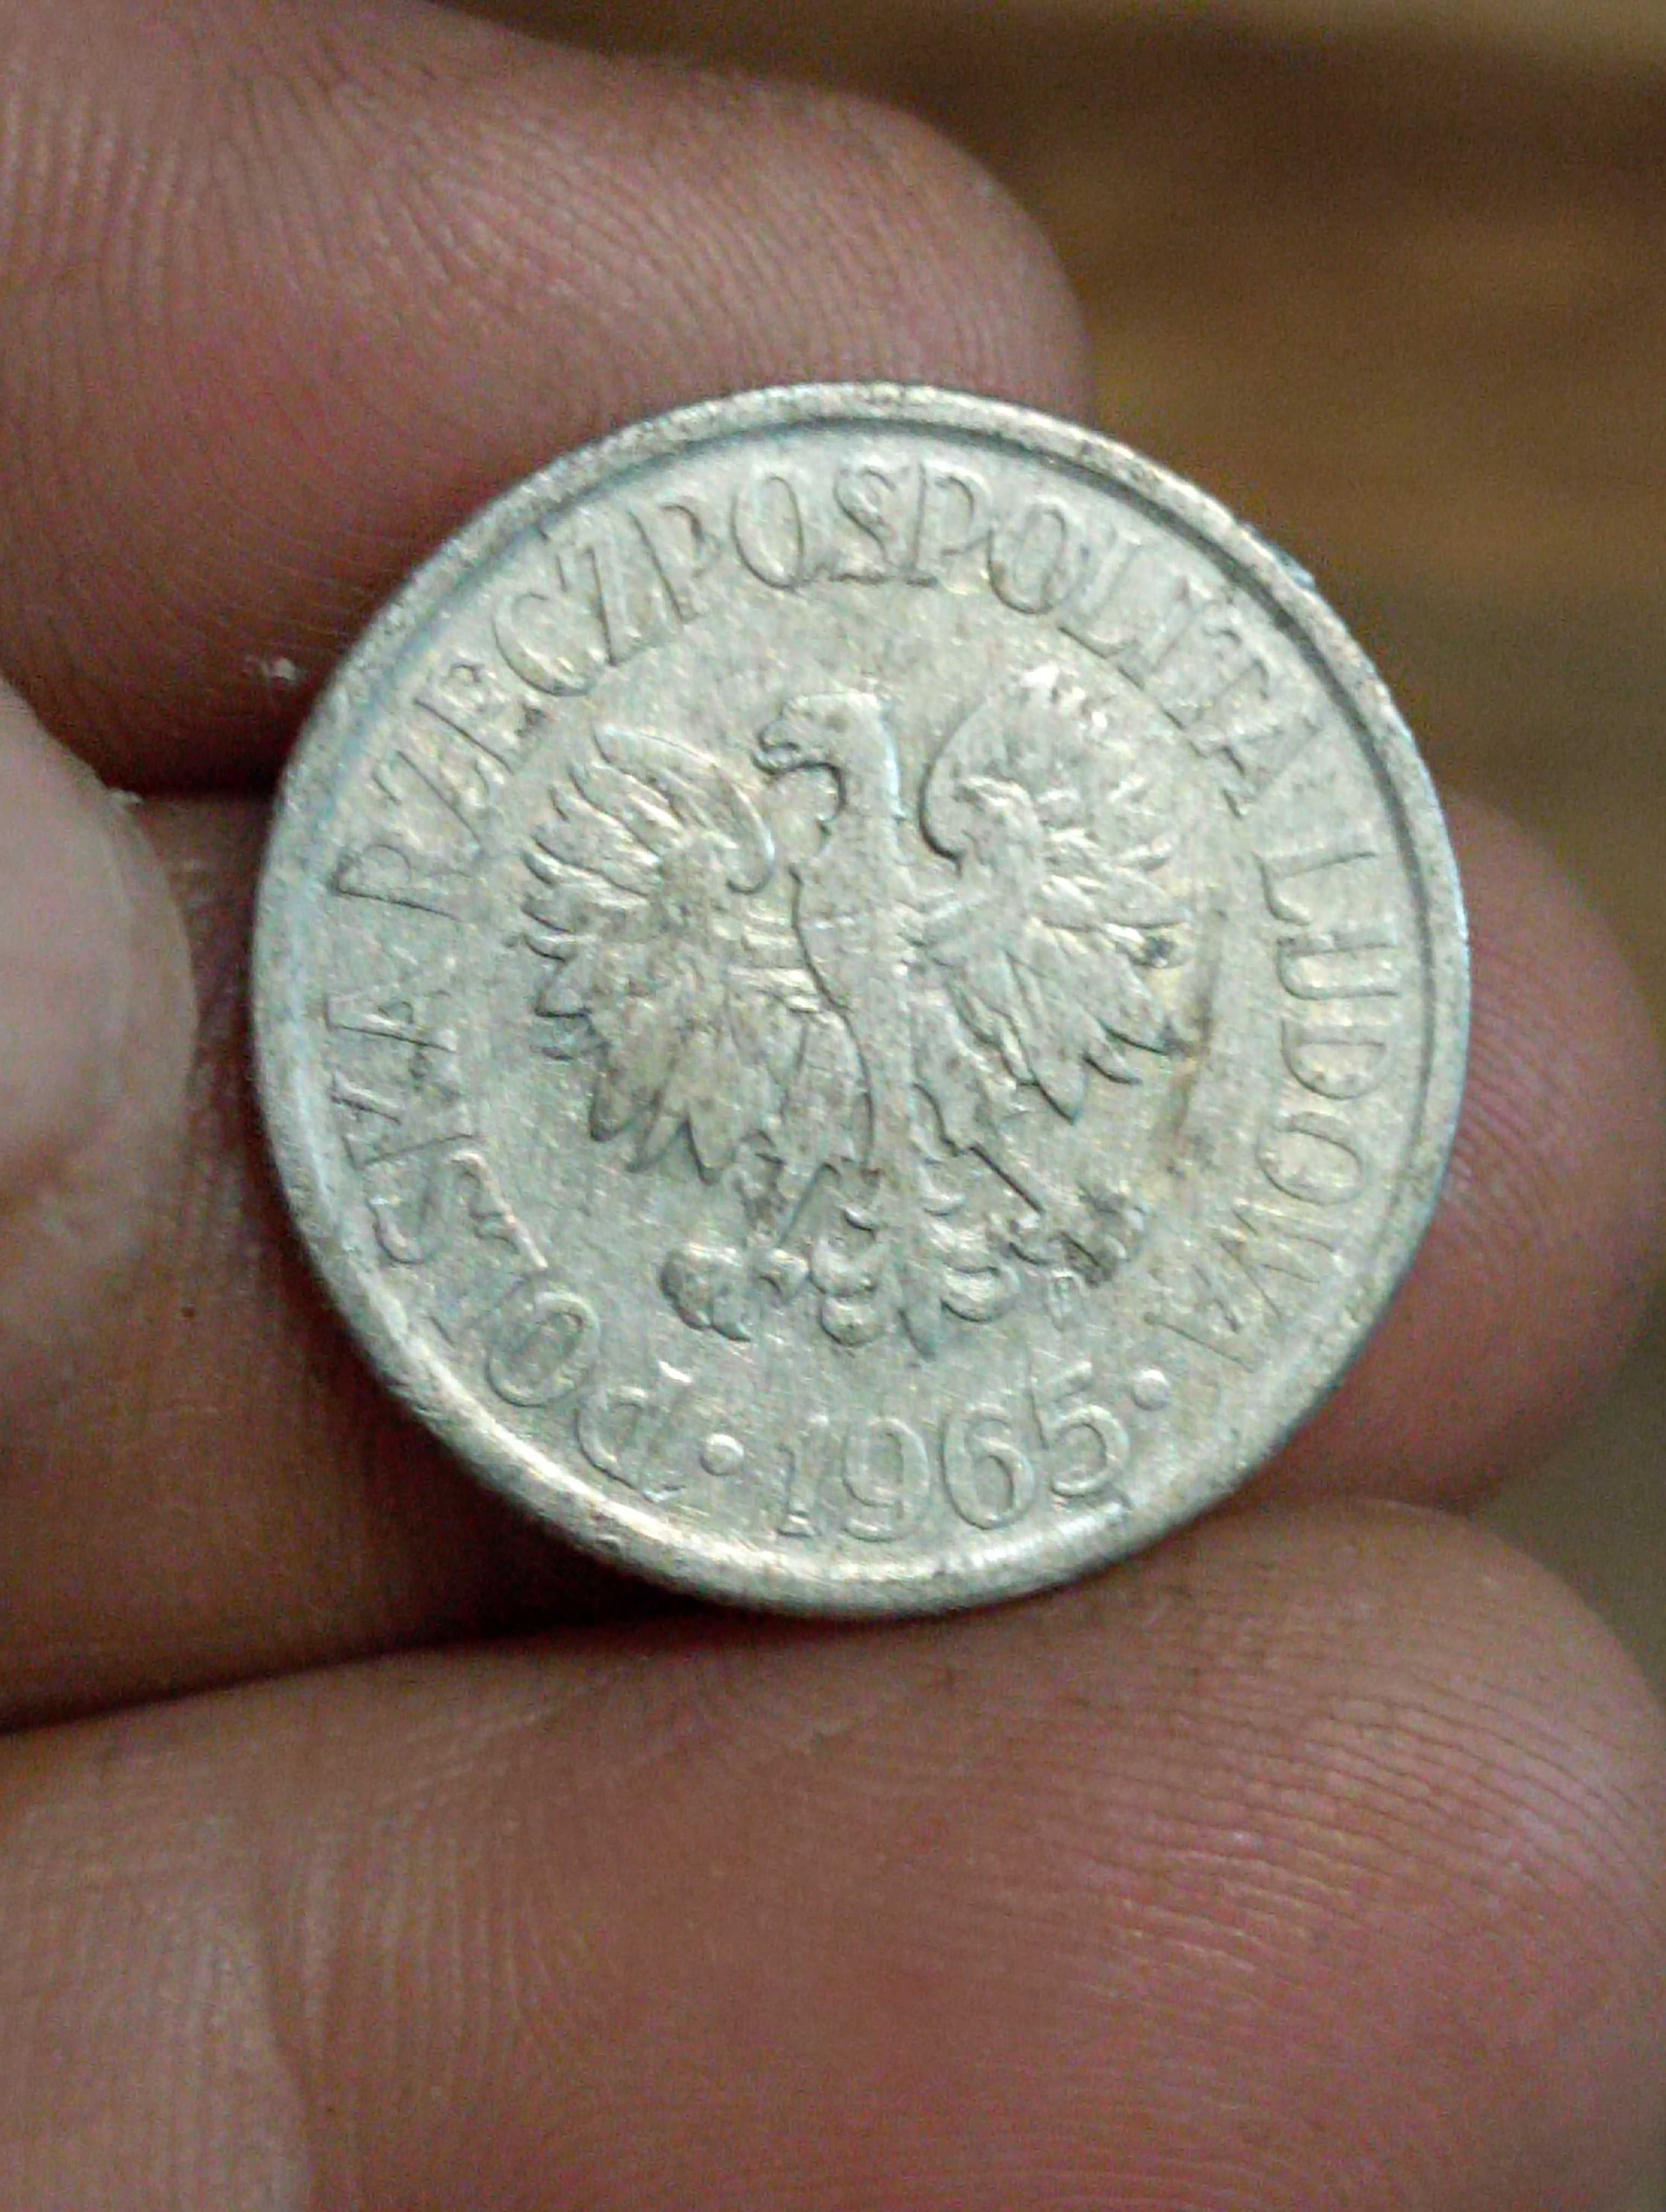 Sprzedam monete piata 50 groszy 1965 rok